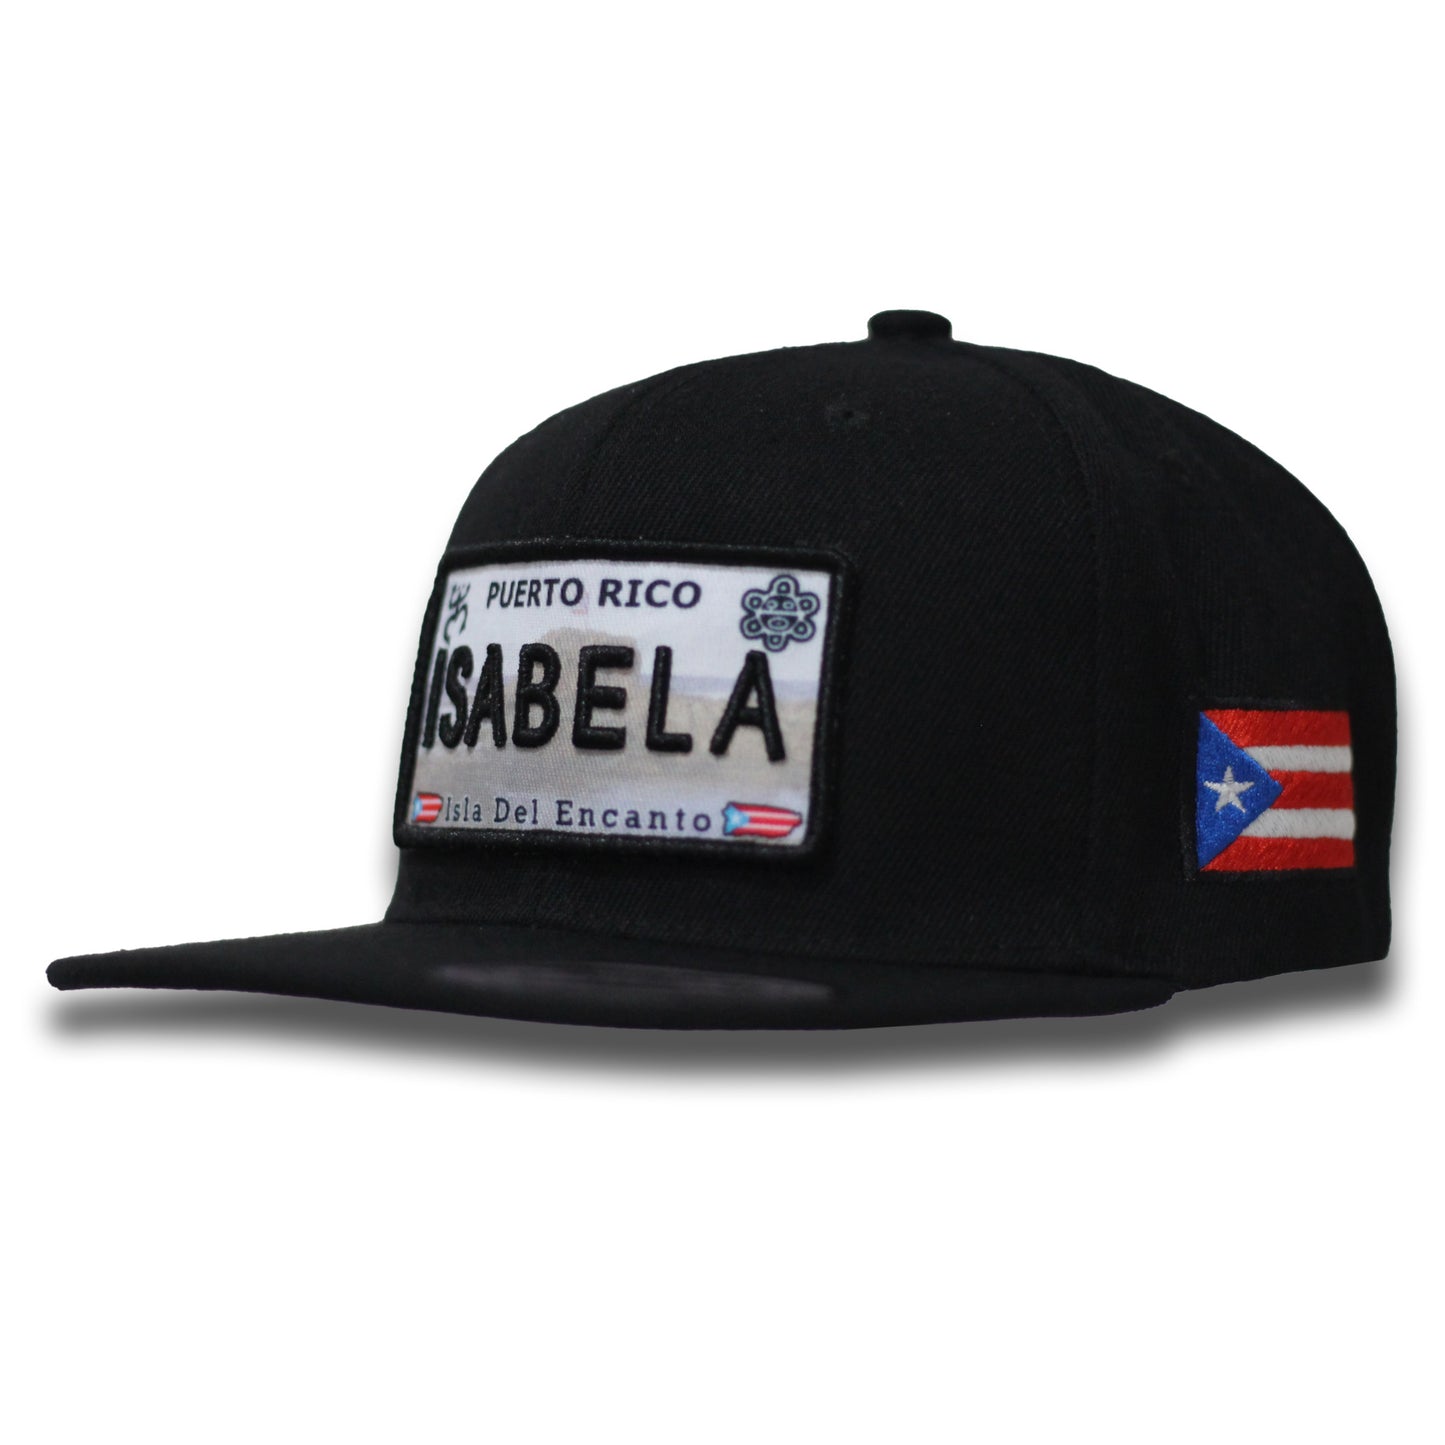 Isabela Hat